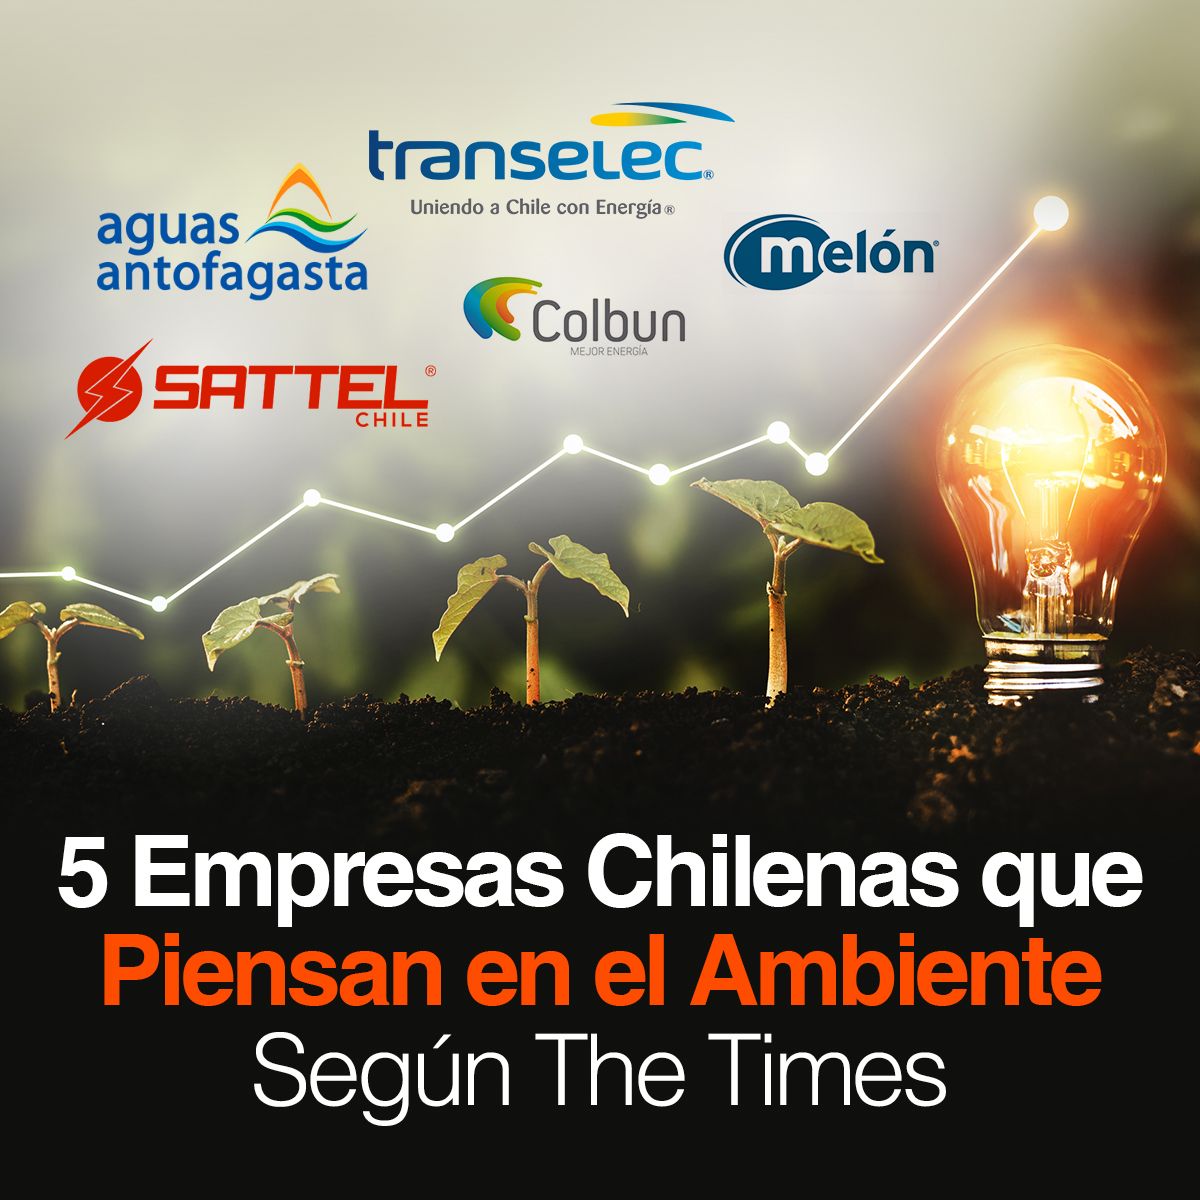 5 Empresas Chilenas que Piensan en el Ambiente Según The Times